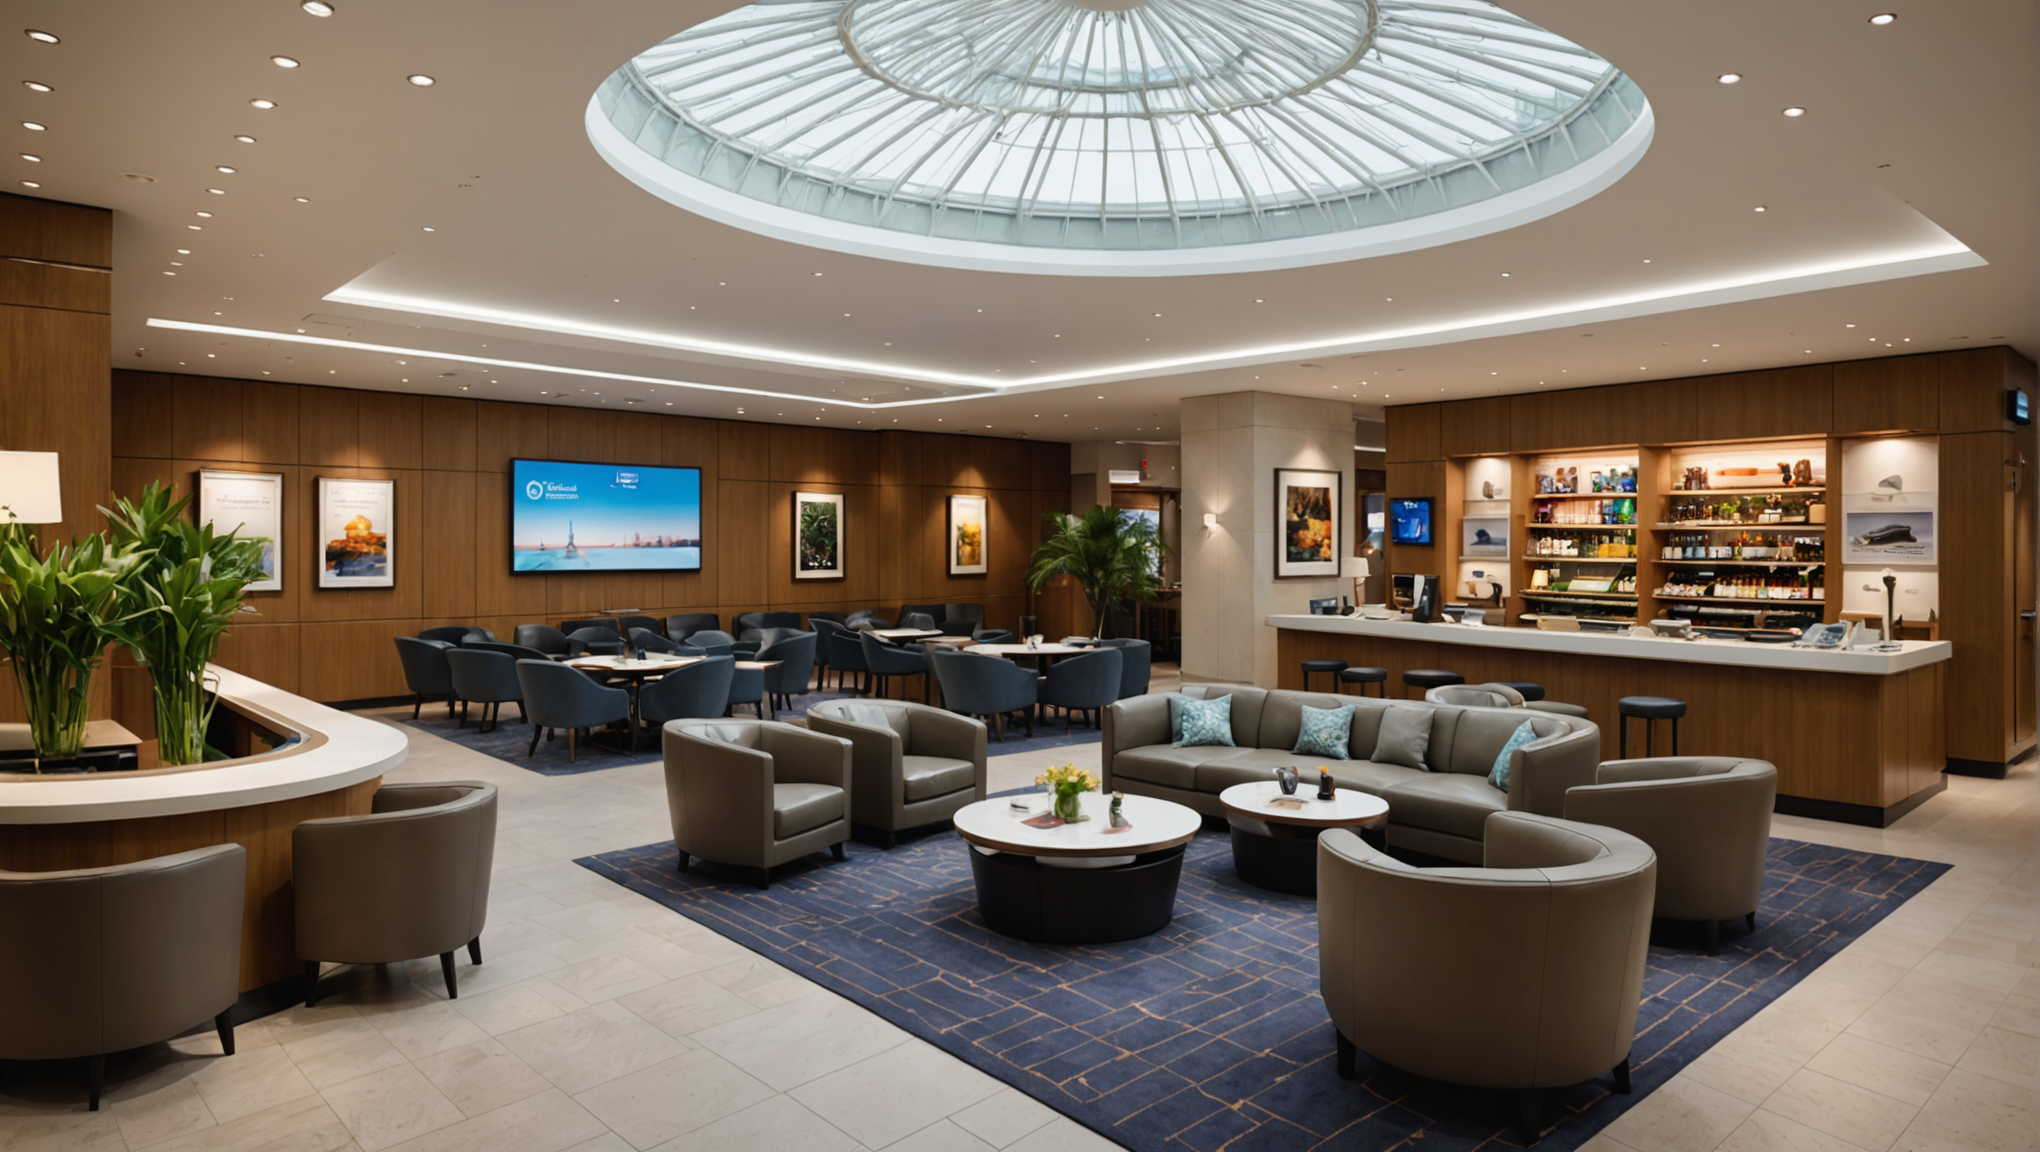 découvrez le nouveau salon emirates au terminal 2c de l'aéroport paris-charles-de-gaulle. profitez d'un espace premium pour votre voyage avec emirates.